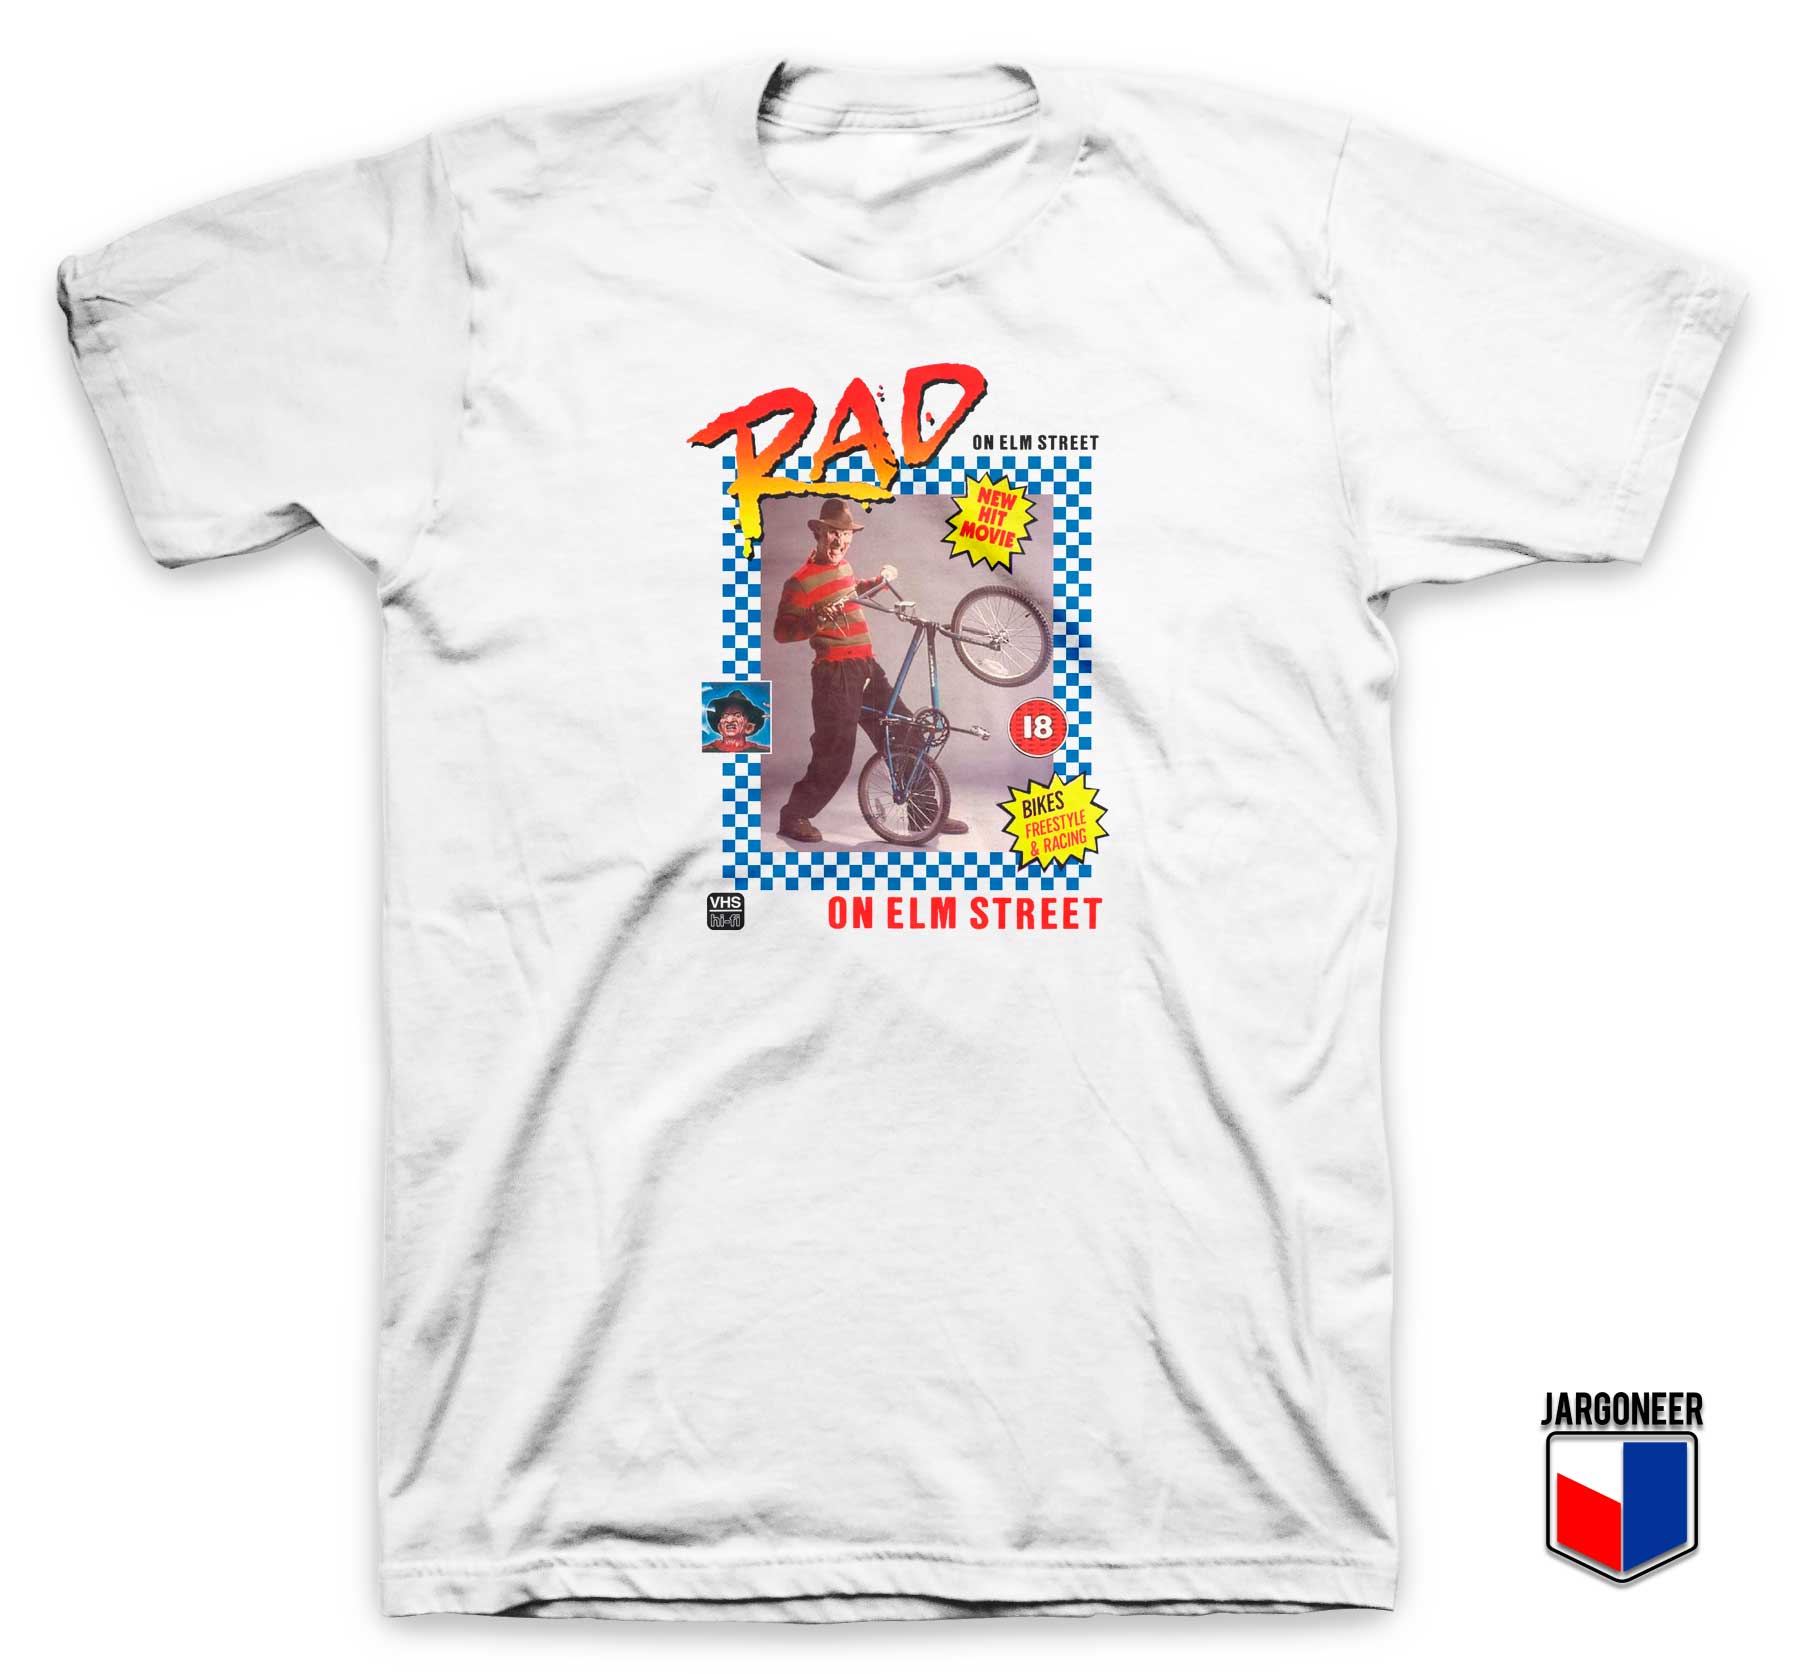 Rad On Elm Street T Shirt - Shop Unique Graphic Cool Shirt Designs